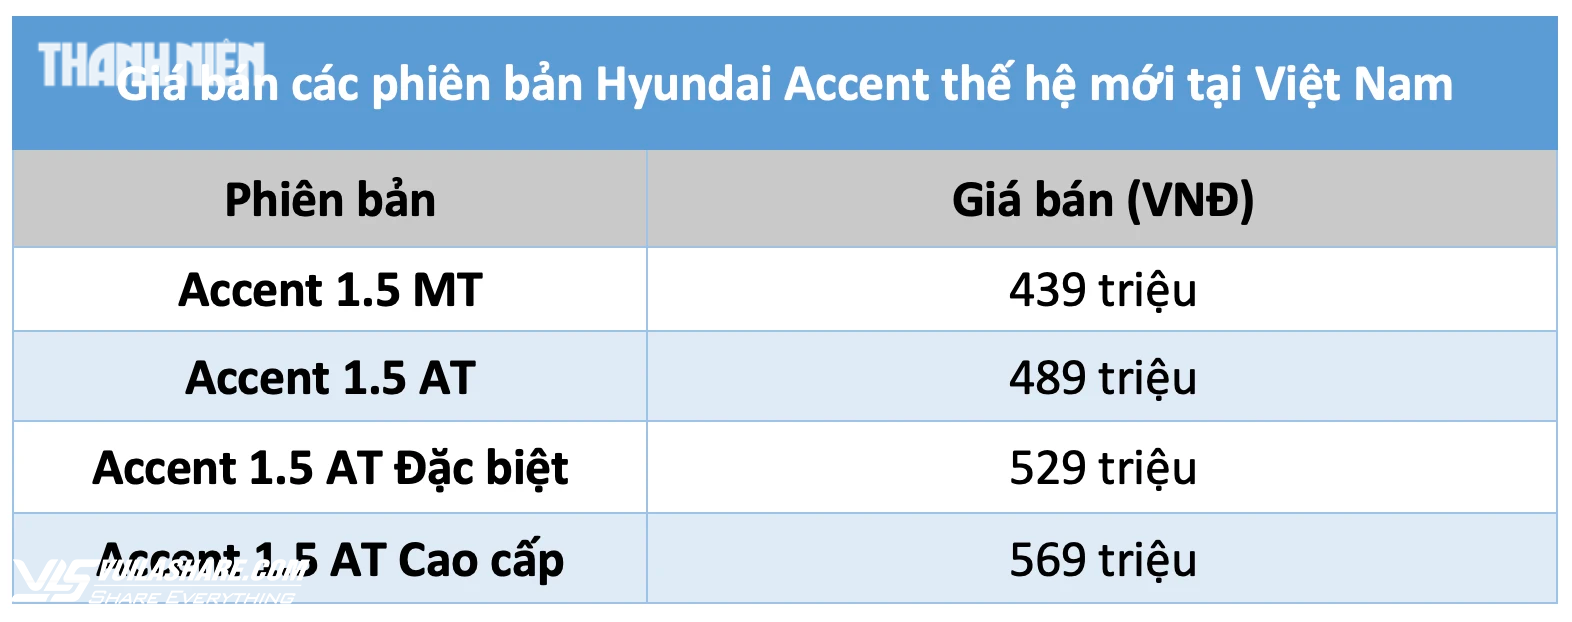 Hyundai Accent thế hệ mới tại Việt Nam có 4 phiên bản, giá từ 439 triệu đồng- Ảnh 2.